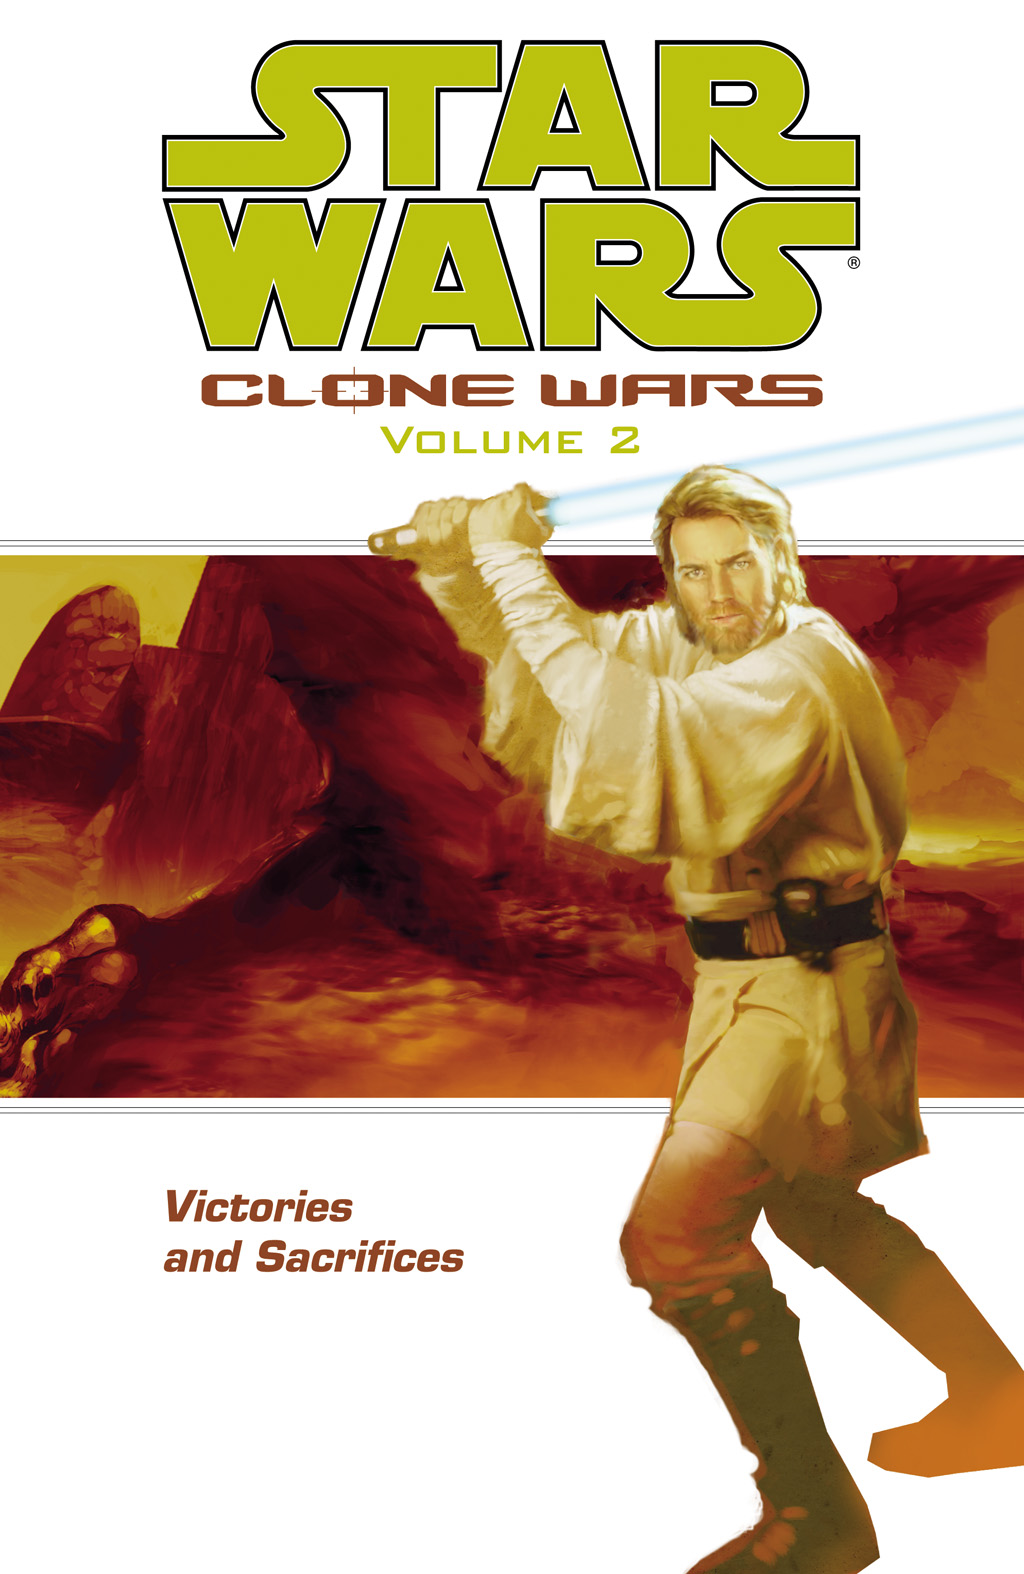 Read online Star Wars: Clone Wars comic -  Issue # TPB 2 - 1